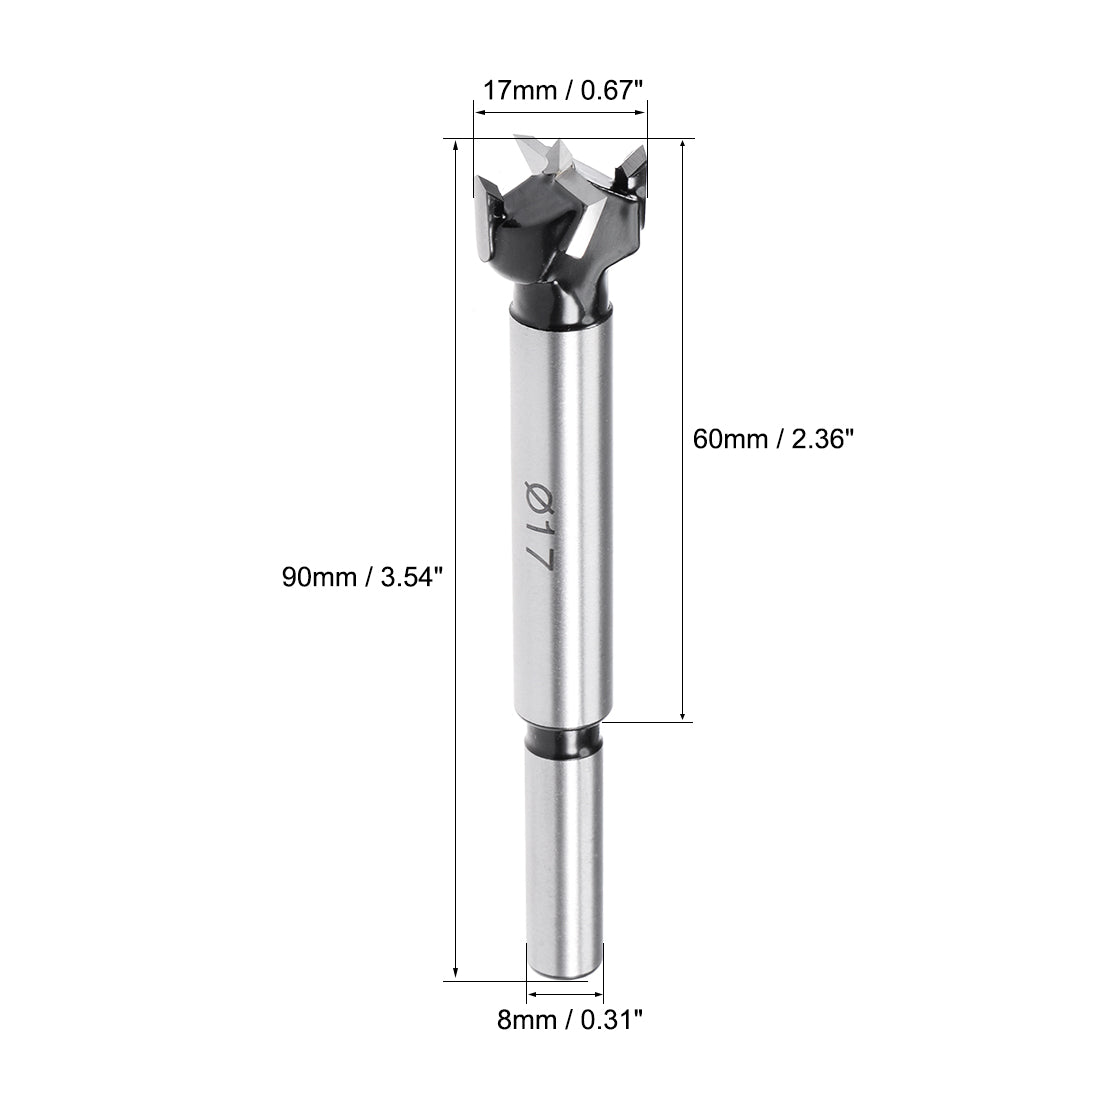 uxcell Uxcell Forstner Drill Bits, 17mm Diameter, 8mm x 30mm Shank